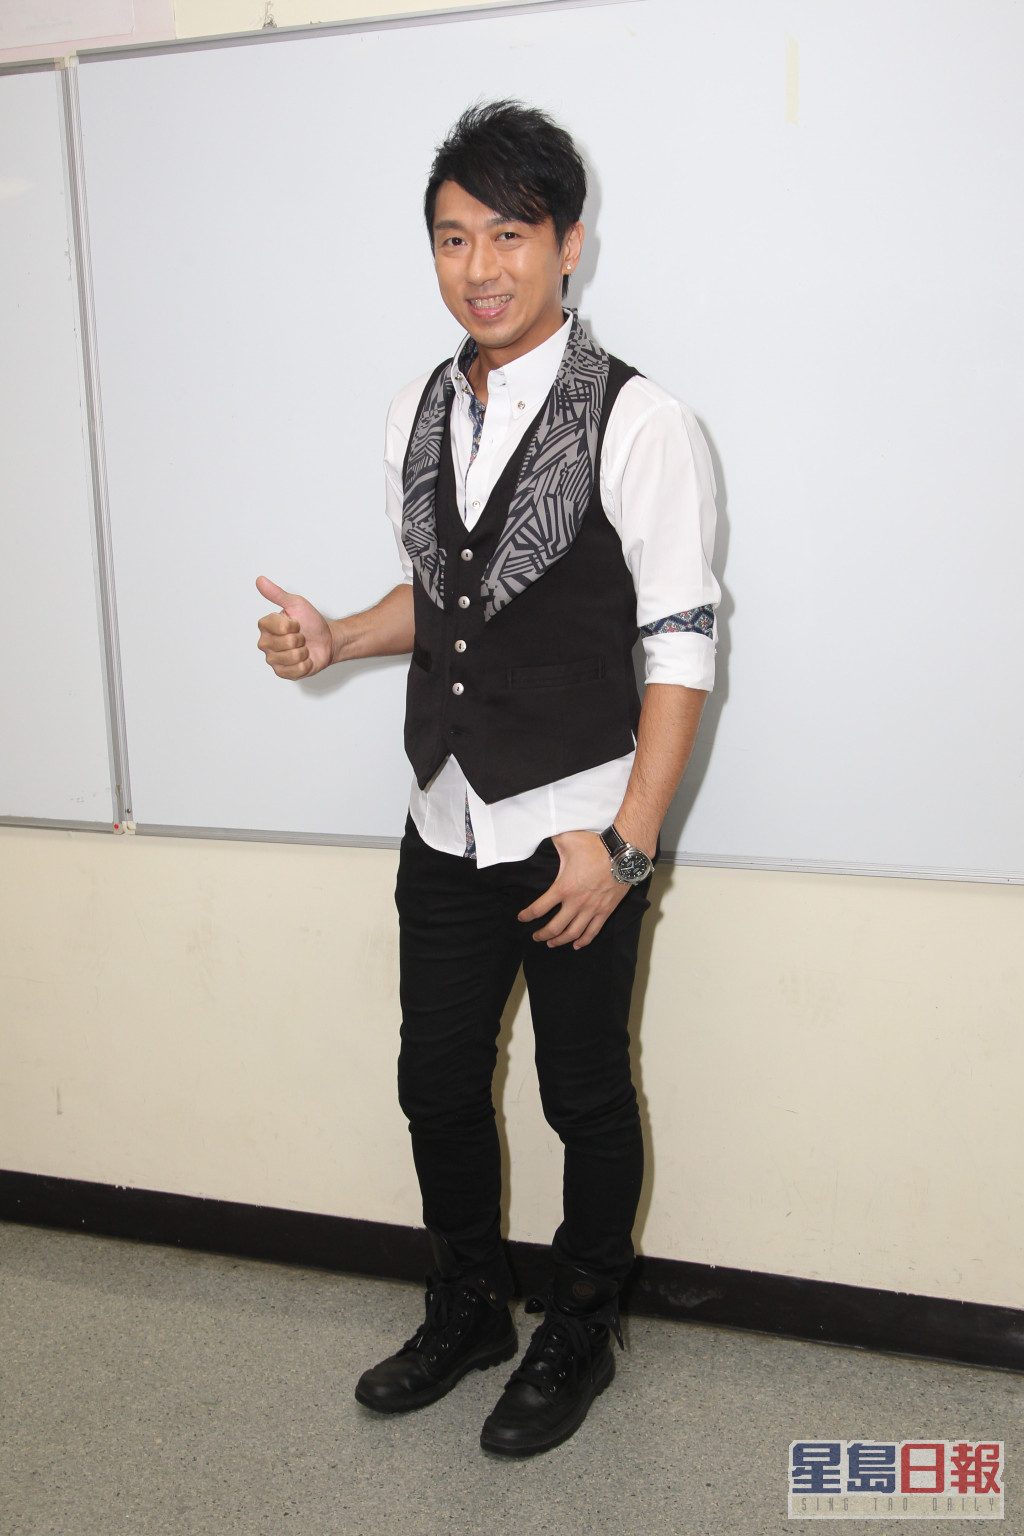 林子博2013年亦參加過TVB歌唱節目《星夢傳奇》。